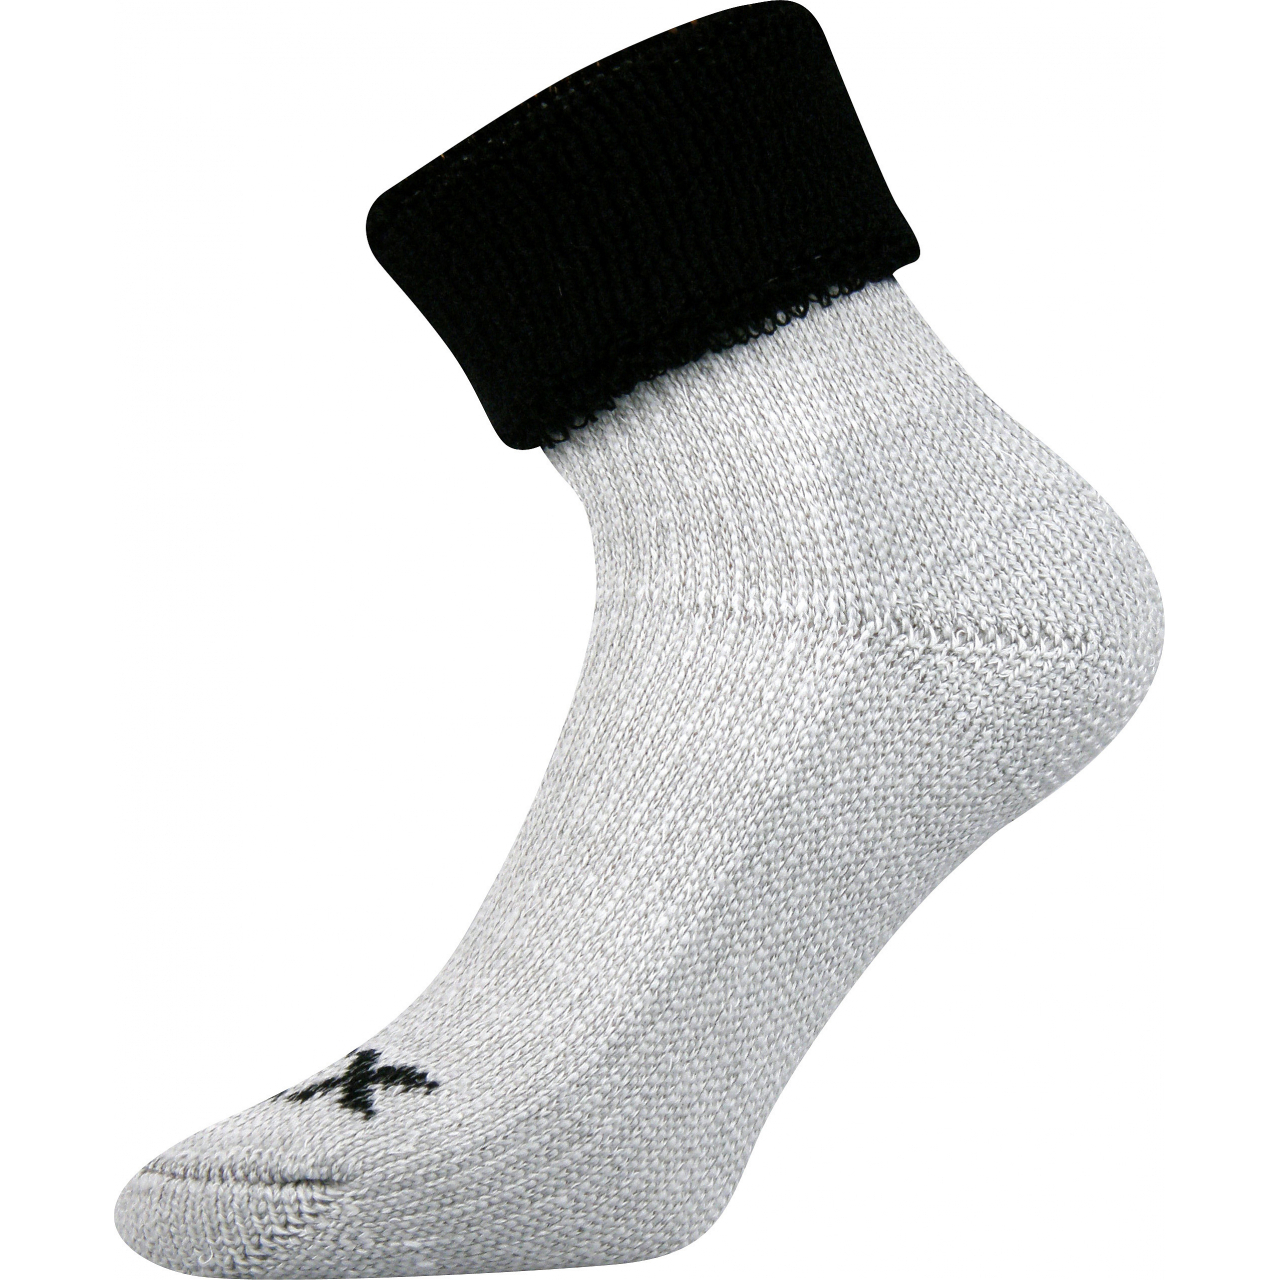 Ponožky dámské termo Voxx Quanta - šedé-černé, 35-38